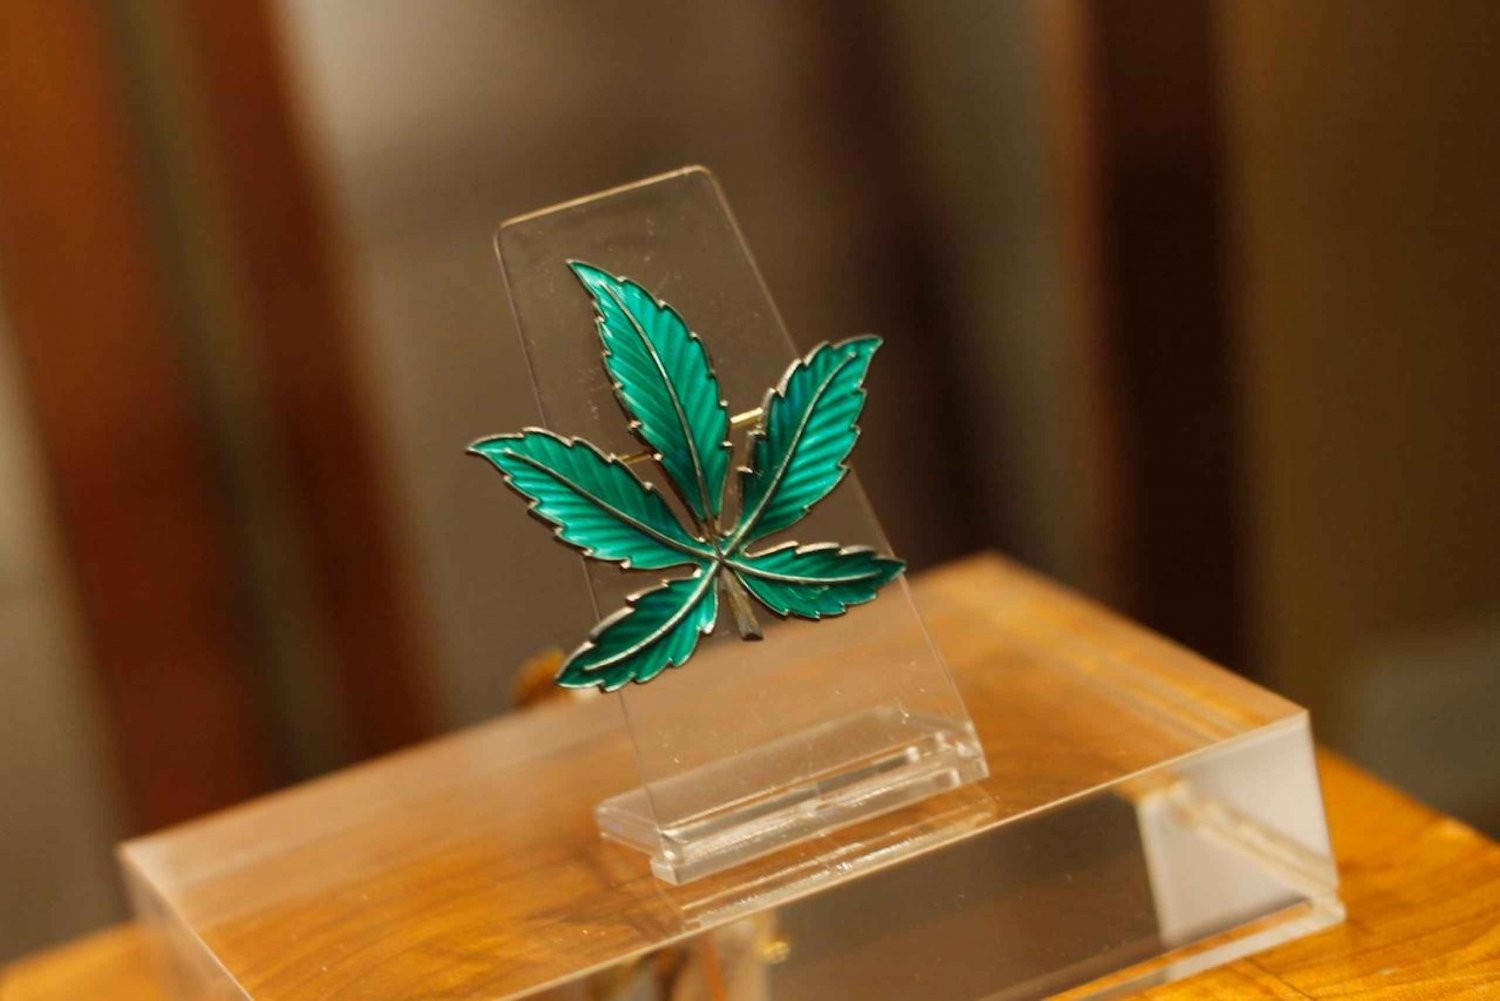 Barcelona: inträdesbiljett till museet för haschmarijuana och hampa